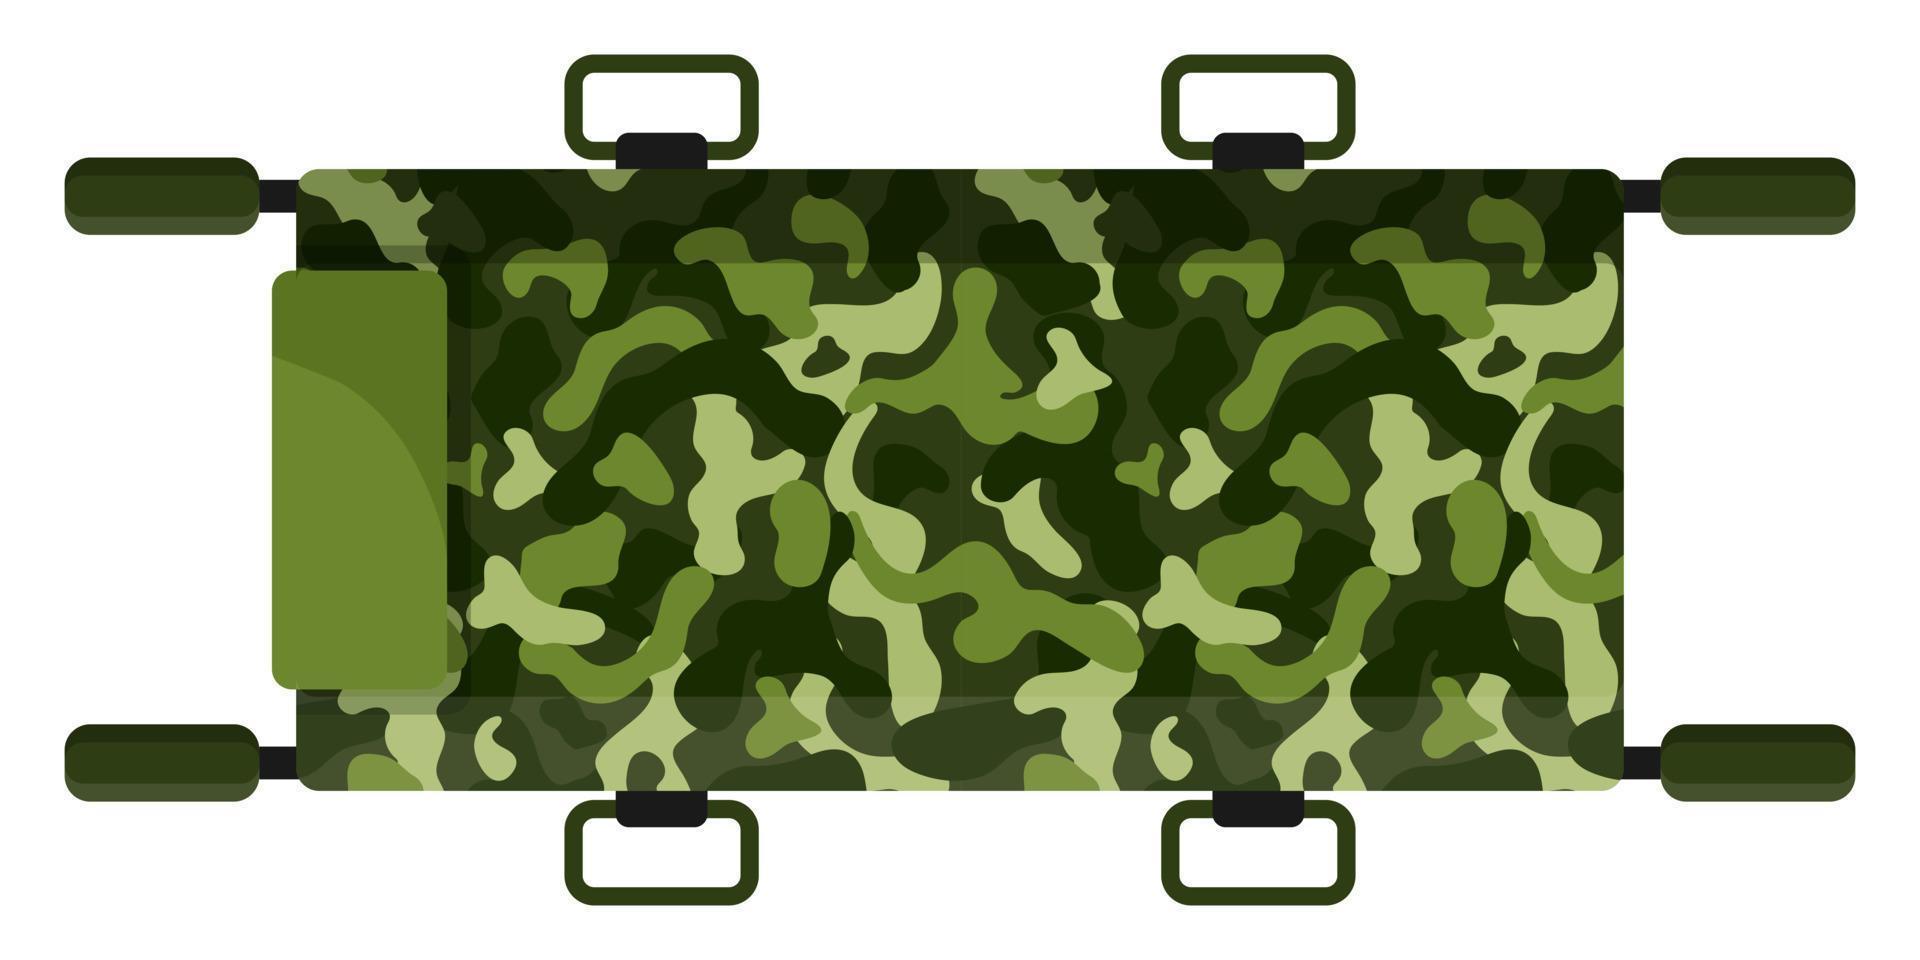 maca de camuflagem cáqui verde-oliva militar médica para primeiros socorros. vetor